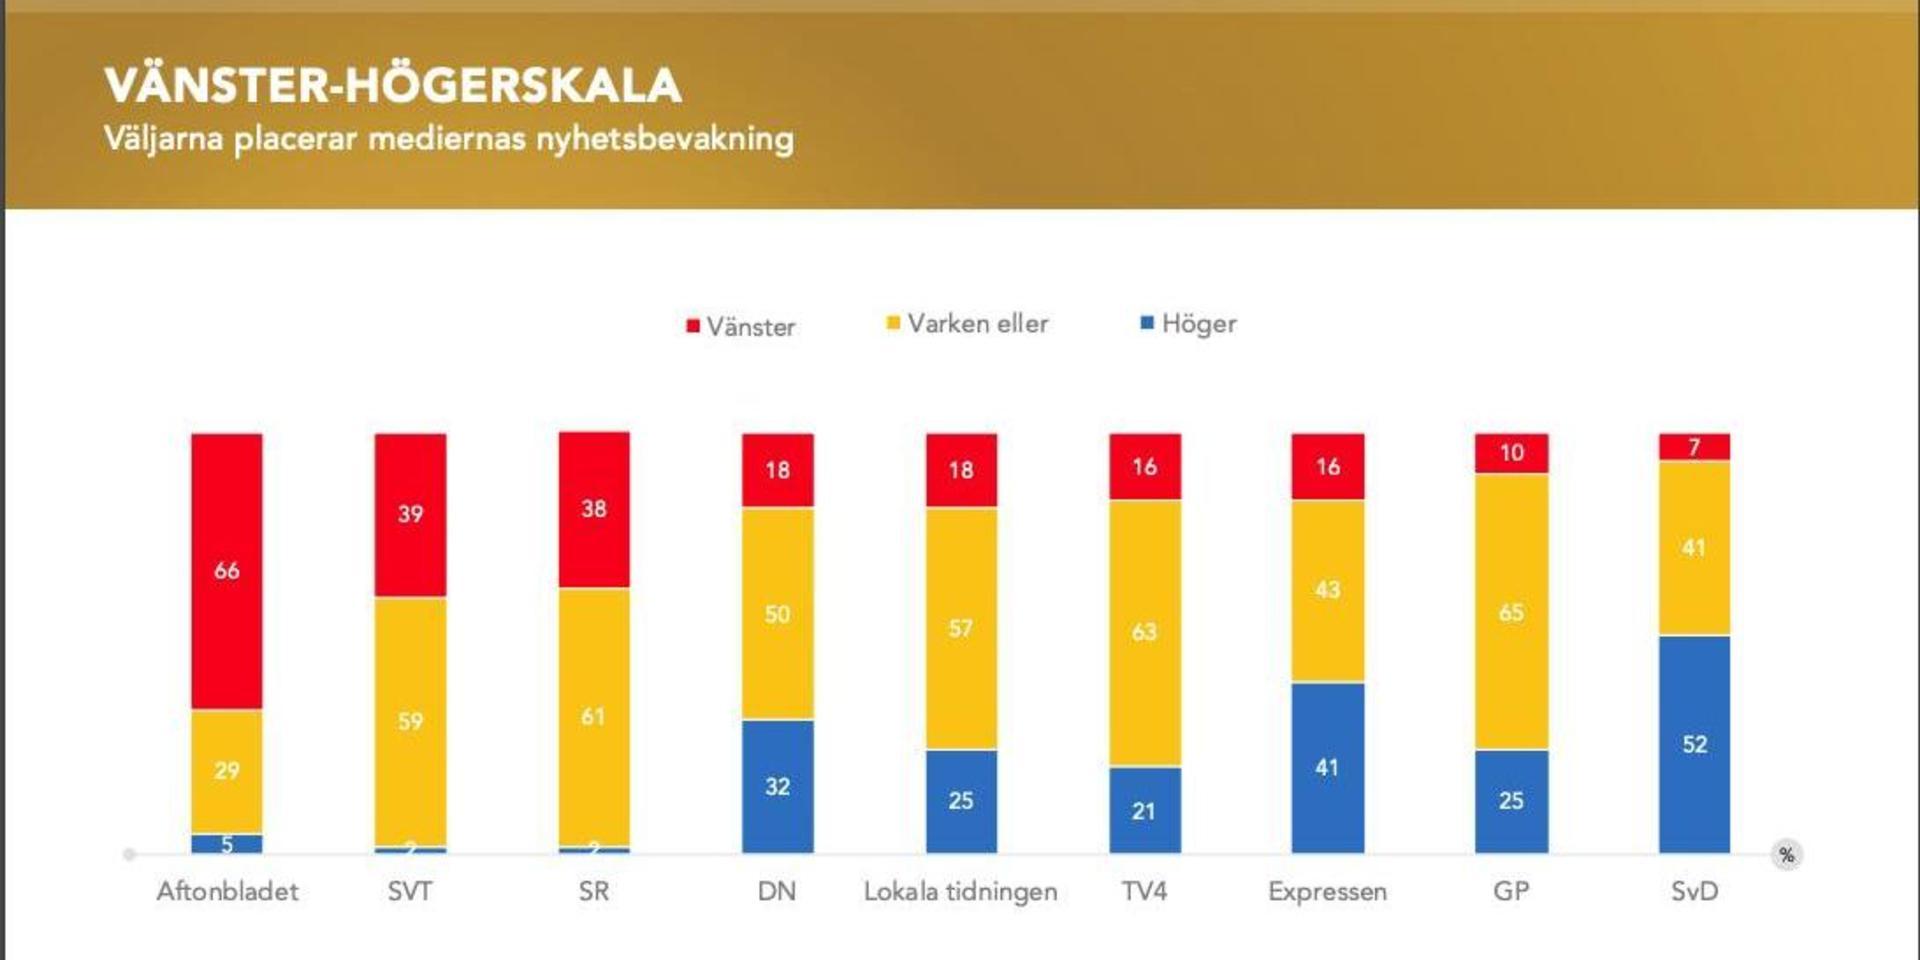 Under tisdagen släppte Medieakademien Förtroendebarometern 2021 i samarbete med Kantar Sifo. I grafiken ovan ser man hur många av de tillfrågade som uppfattade mediernas nyhetsbevakning som vänstervriden, neutral eller högervriden.